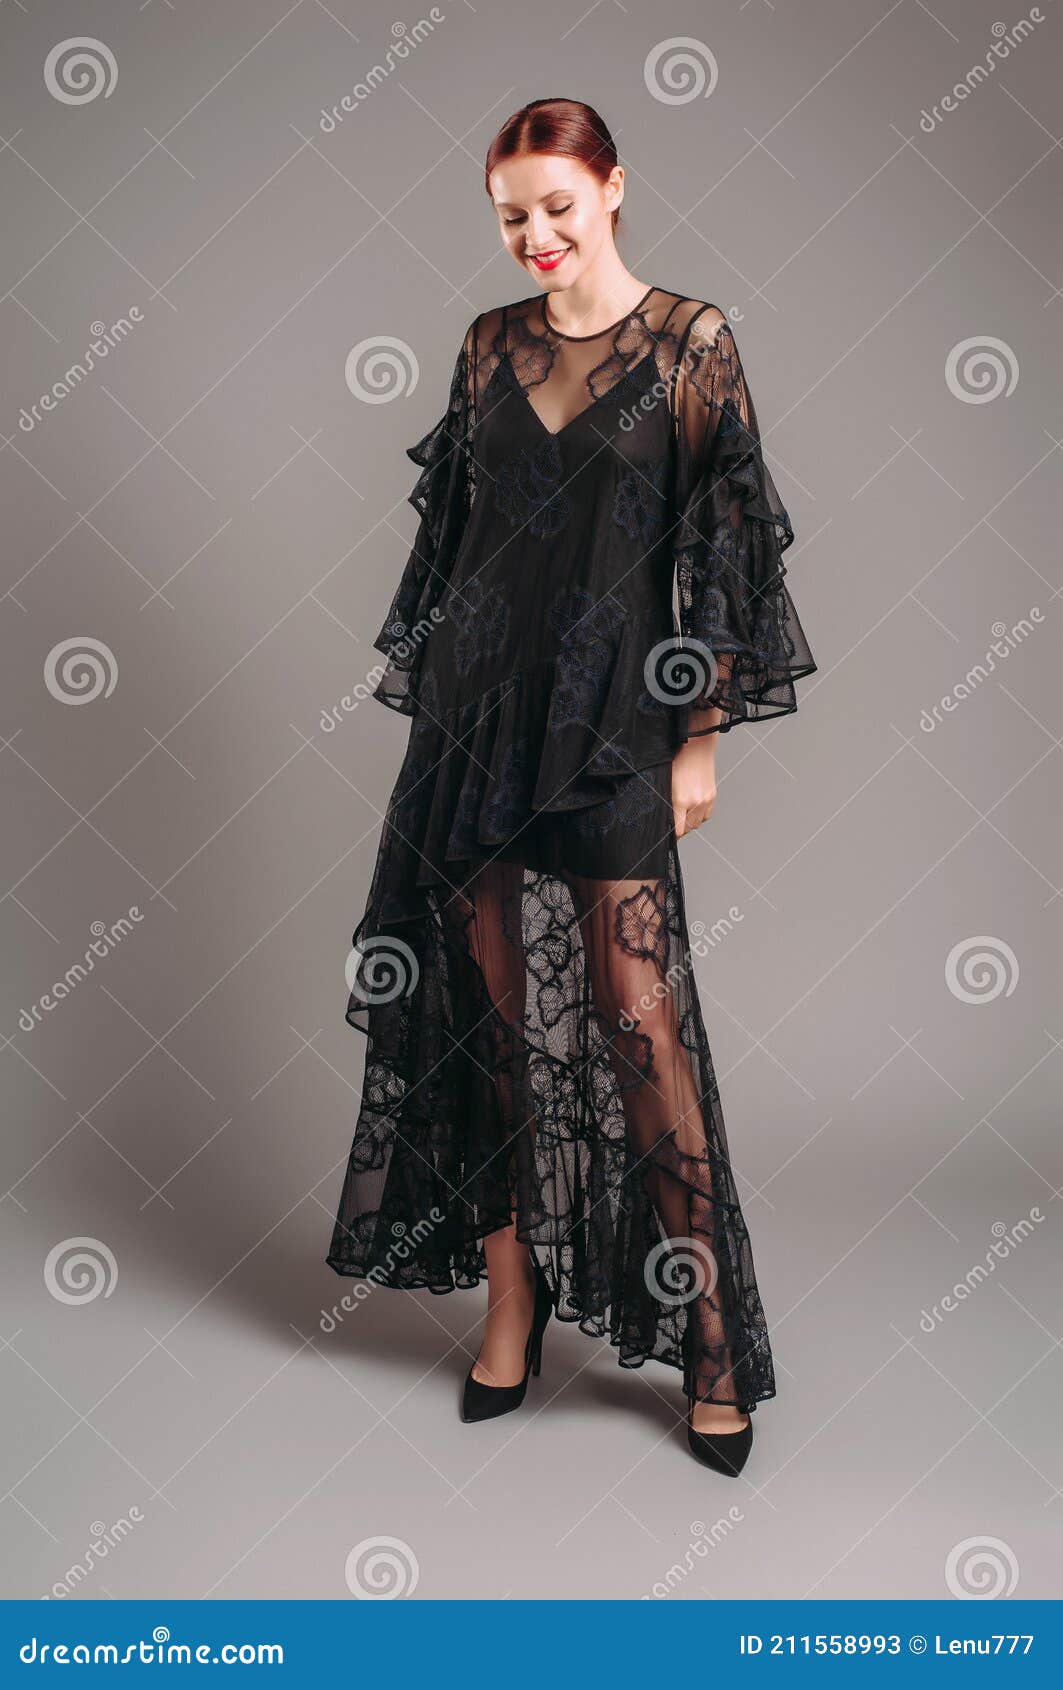 Vestido Negro Transparente De Noche Con Mangas De Murciélago. Hermoso Modelo De Confianza Usando Tacones Altos Moderno Apariencia Imagen de archivo - Imagen de 211558993